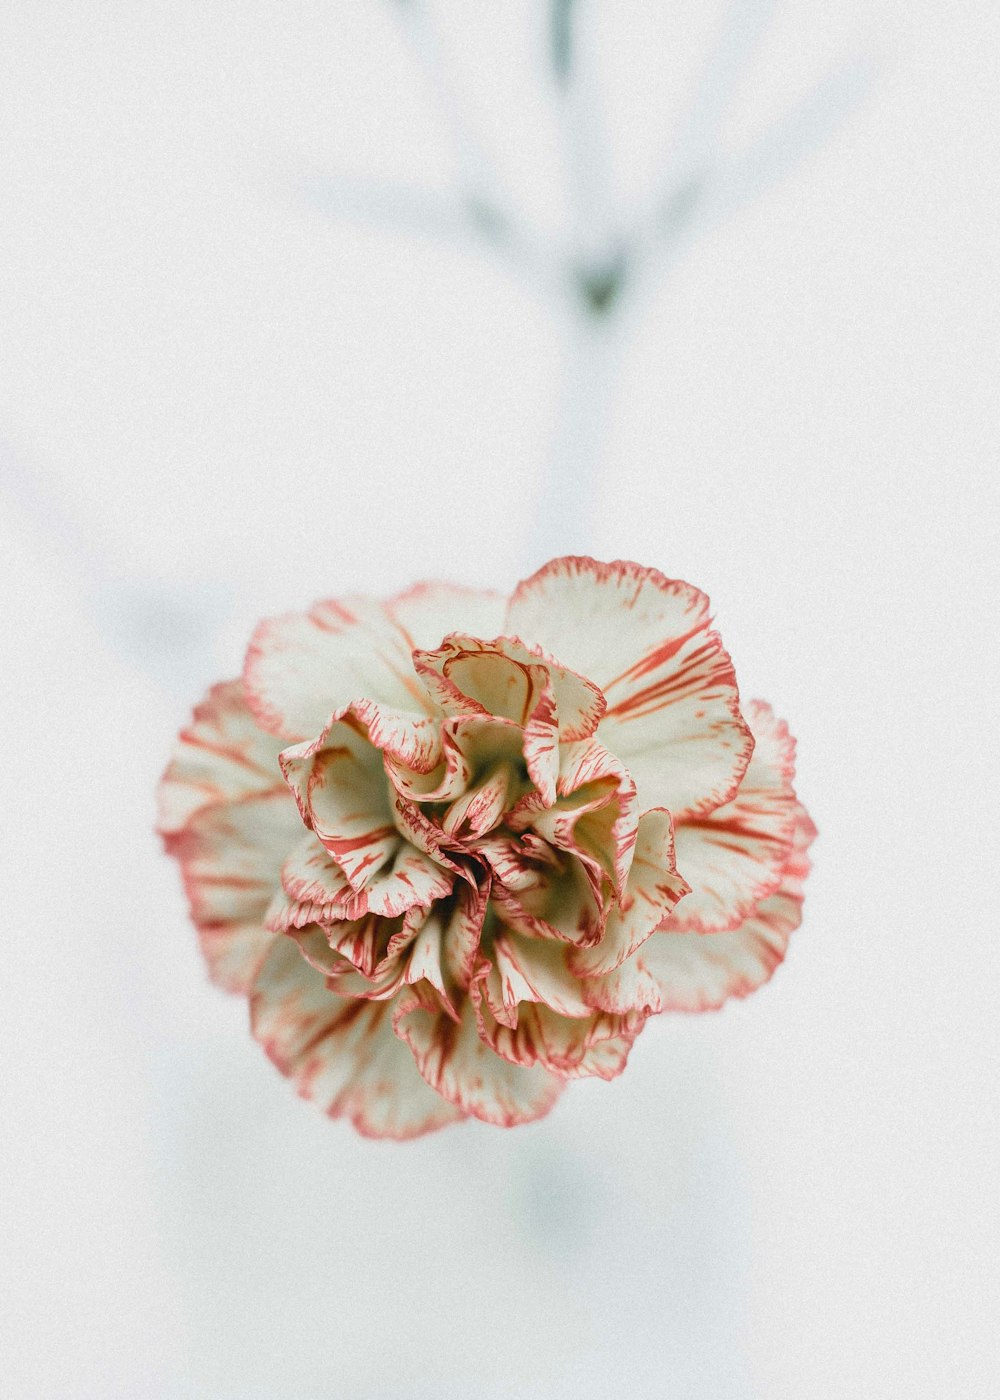 Photographie macro de fleurs rouges et blanches